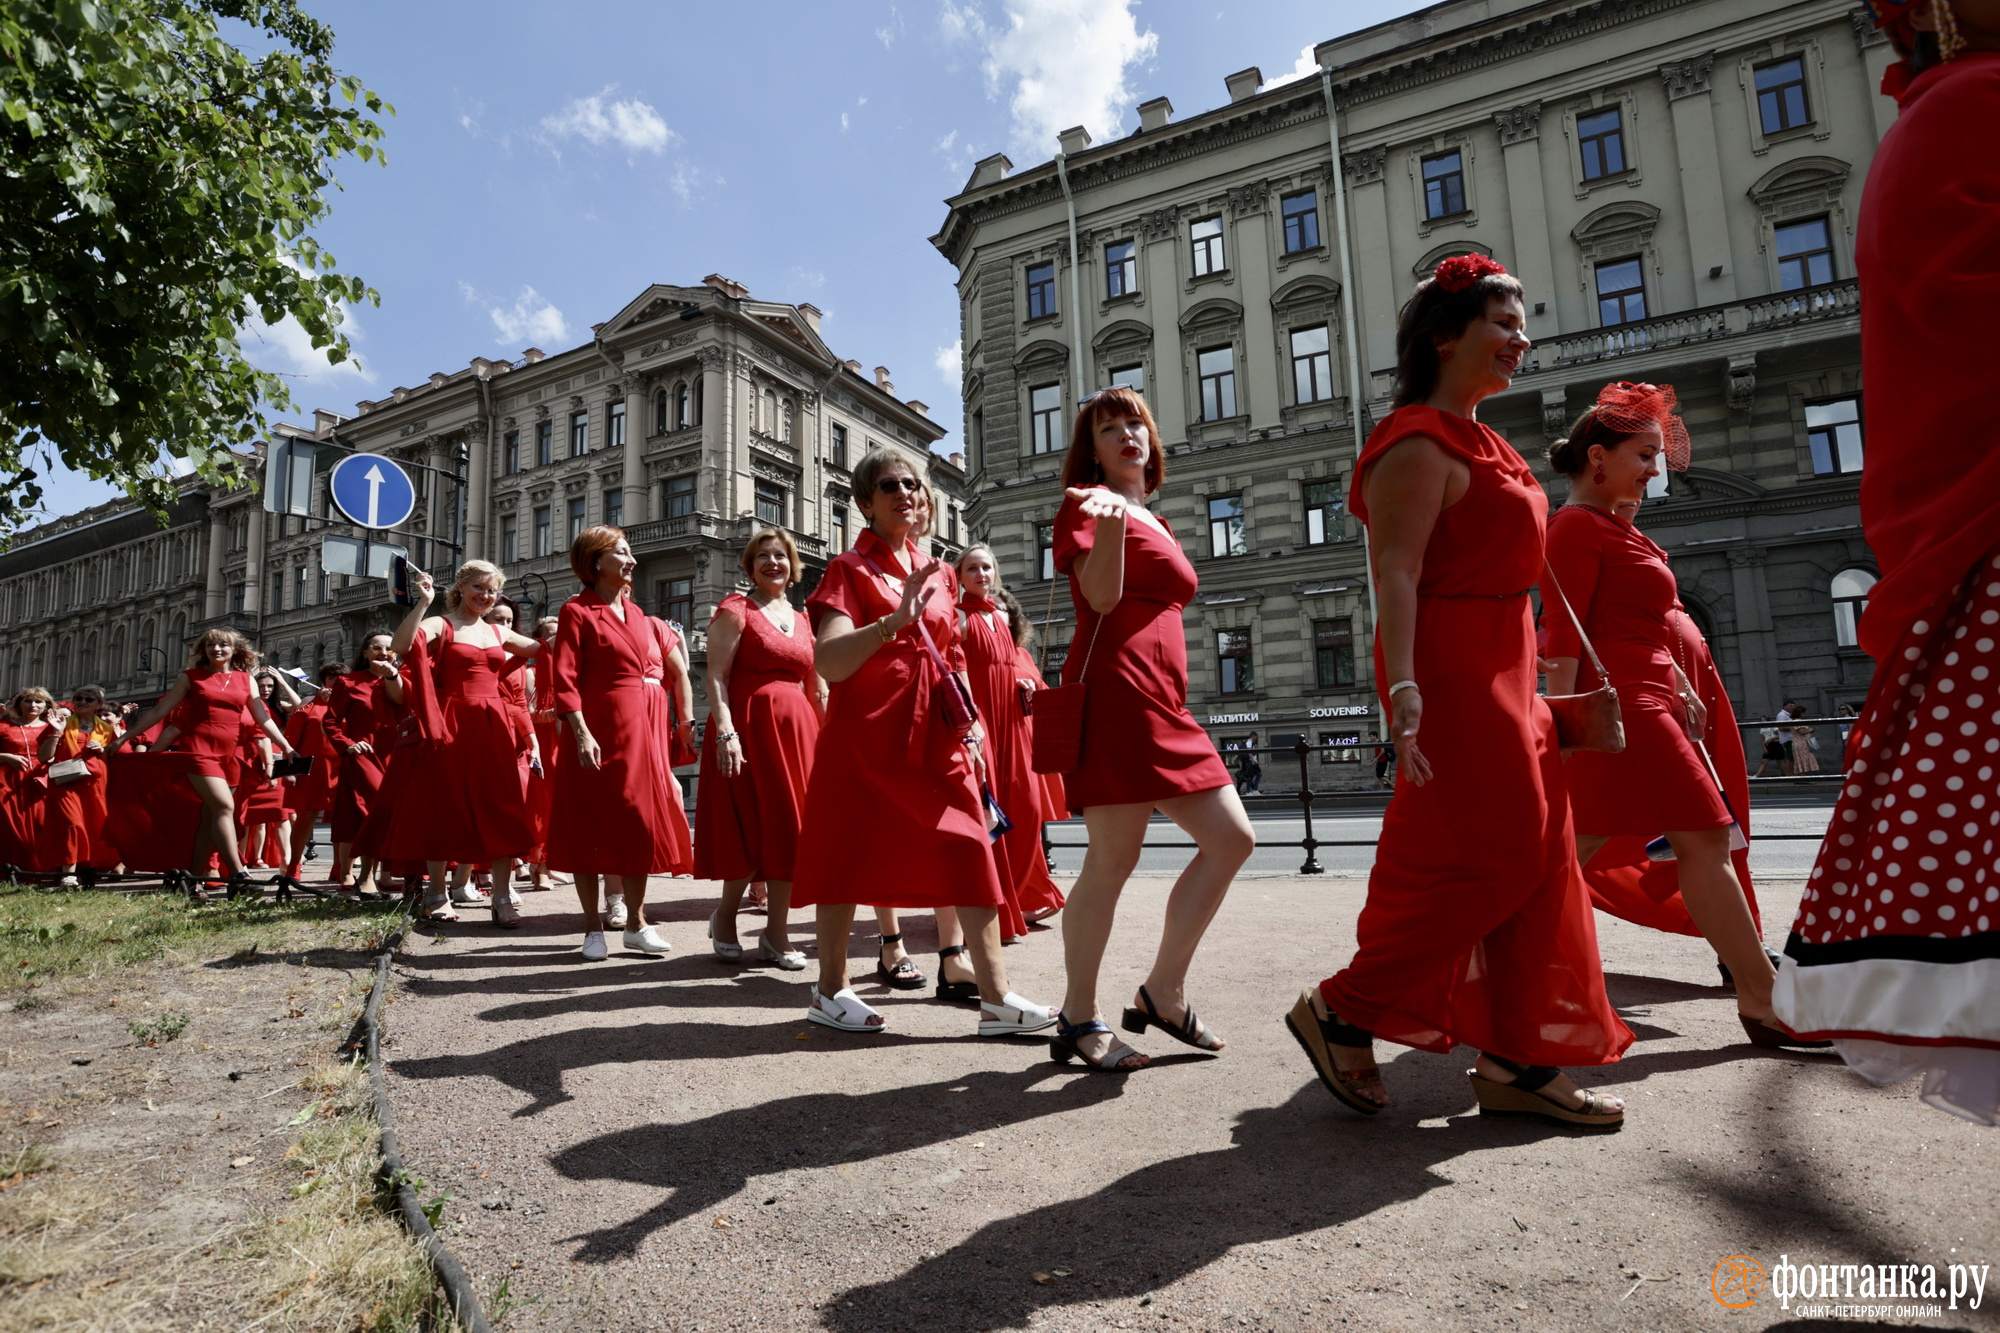 Шествие в красных платьях